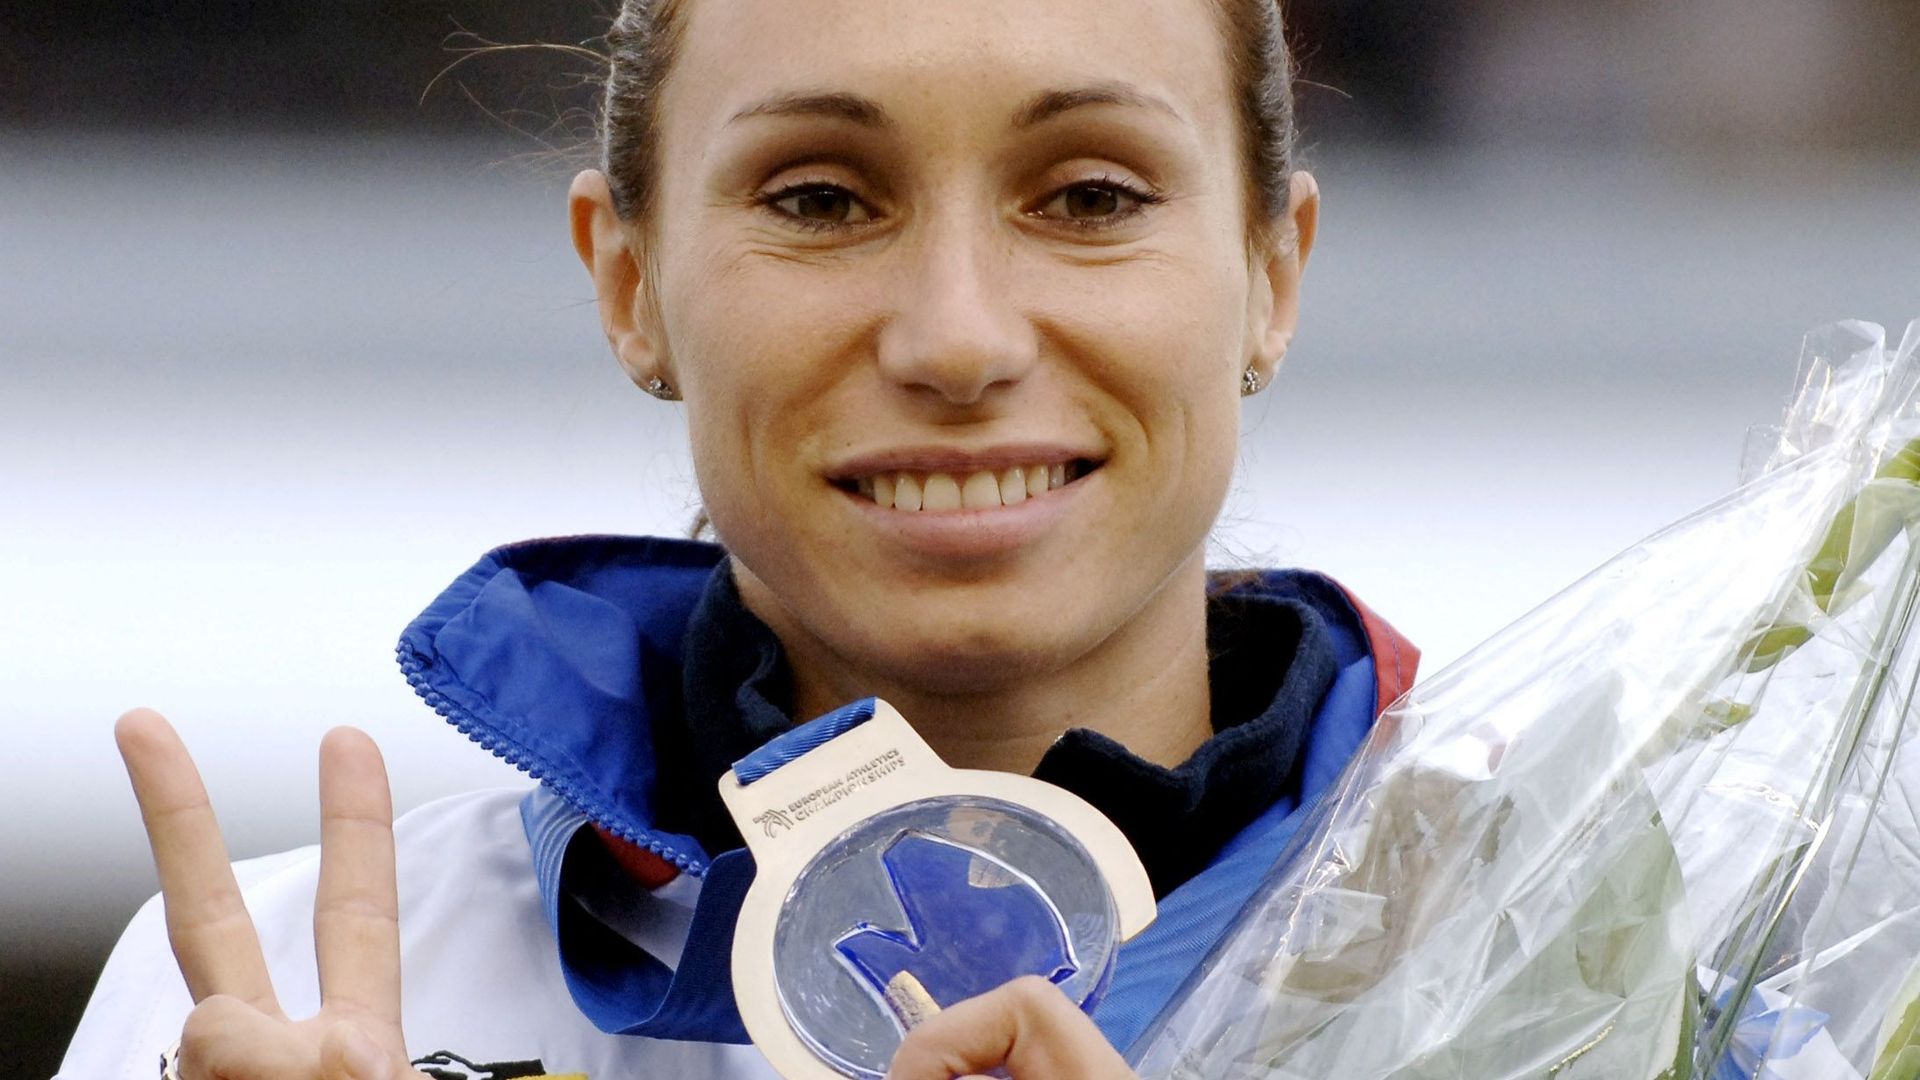 Kim Gevaert, lors de sa victoire en 2006 aux Championnats de Göteborg, (200 mètres)